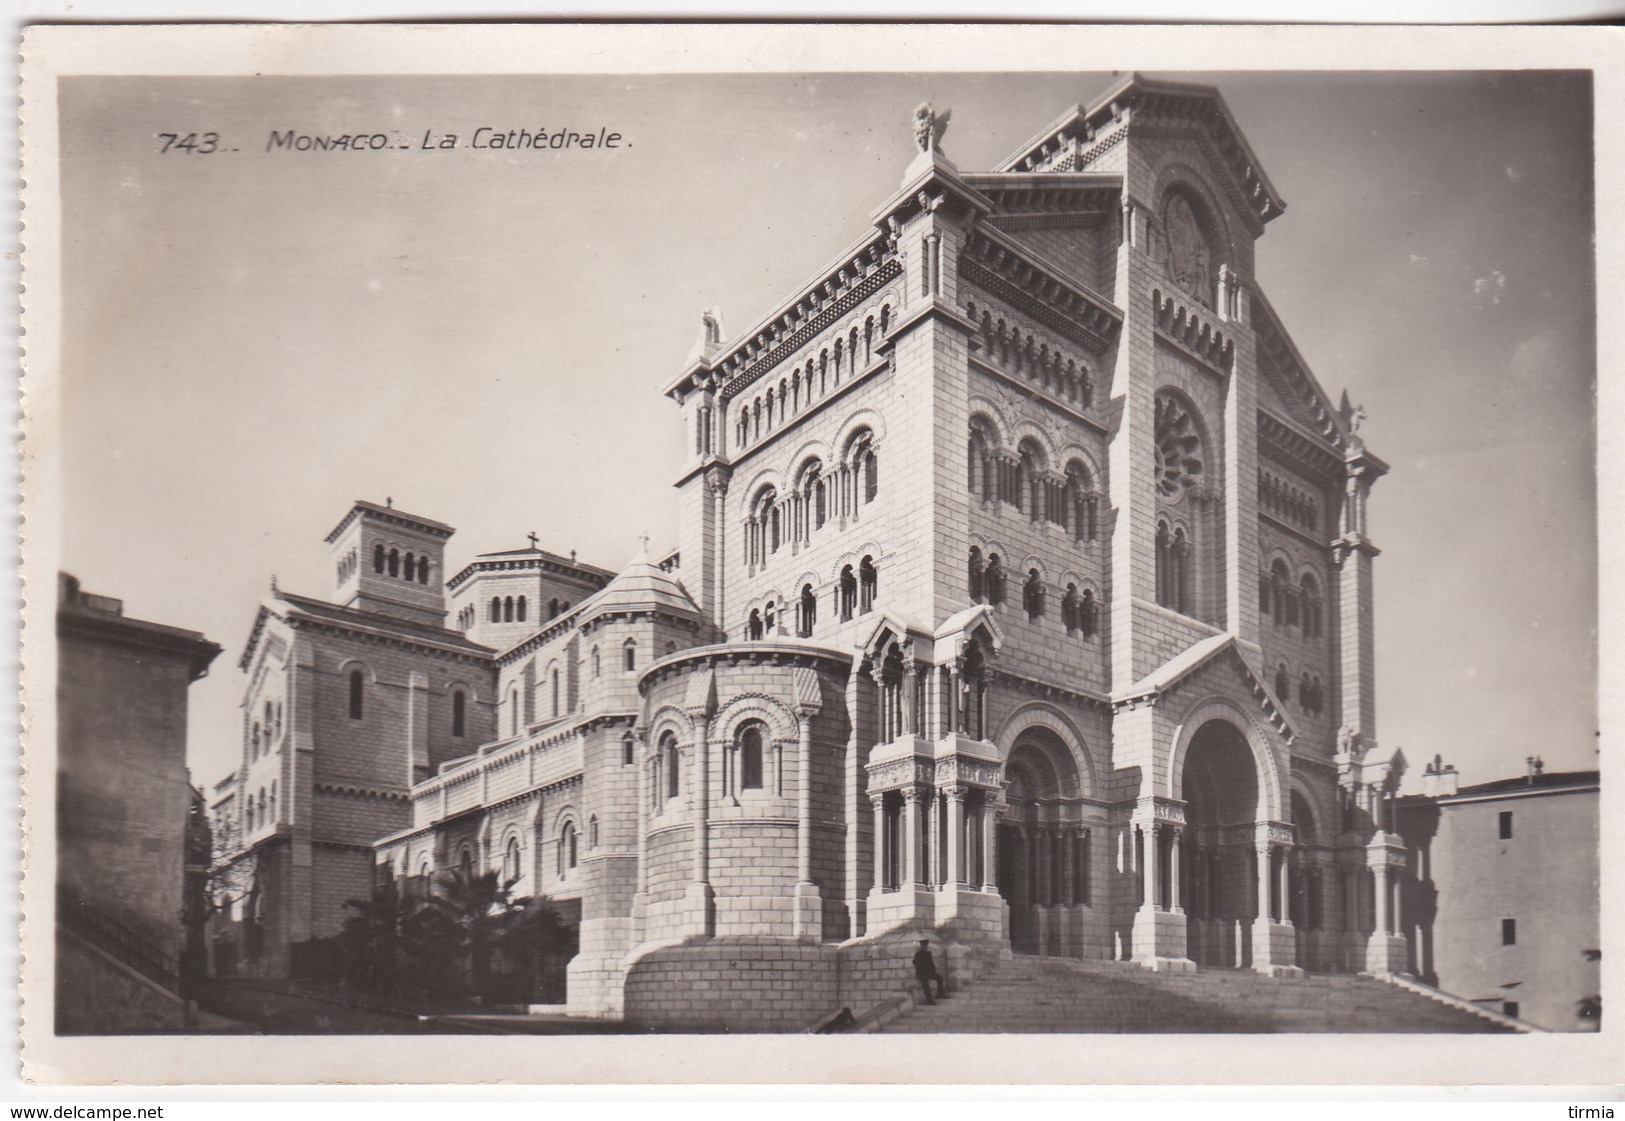 Monaco - La Cathédrale - Cathédrale Notre-Dame-Immaculée